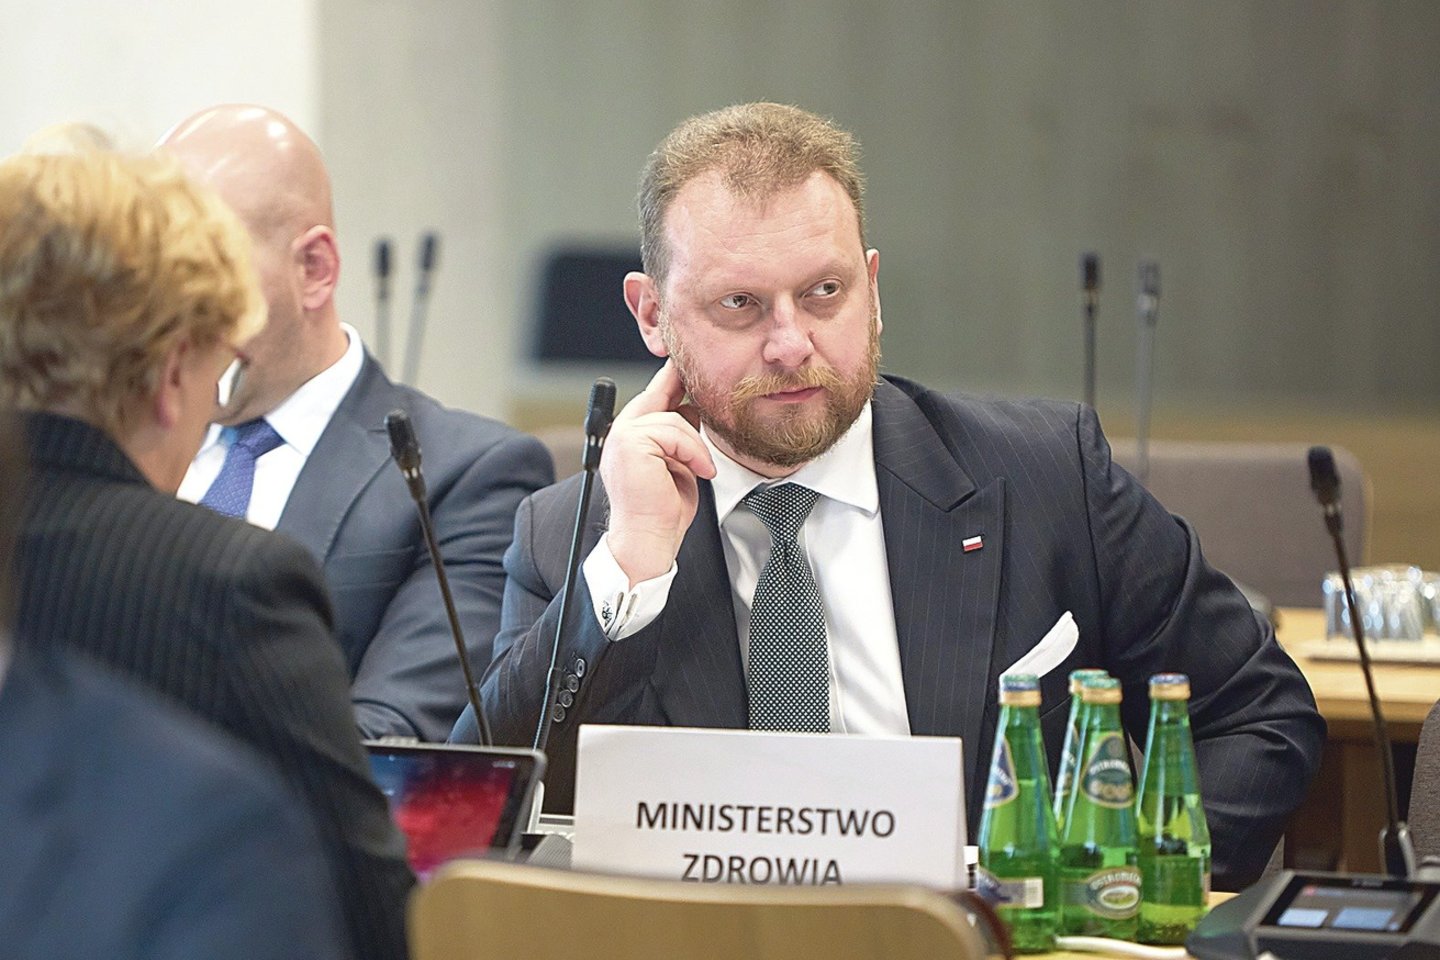 Nekokybiškų veido kaukių pirkimo afera paskatino žiniasklaidą pasidomėti ministro L.Szumowskio šeimos verslais ir mokesčių deklaracijomis.<br>ZUMA Press/Scanpix nuotr.